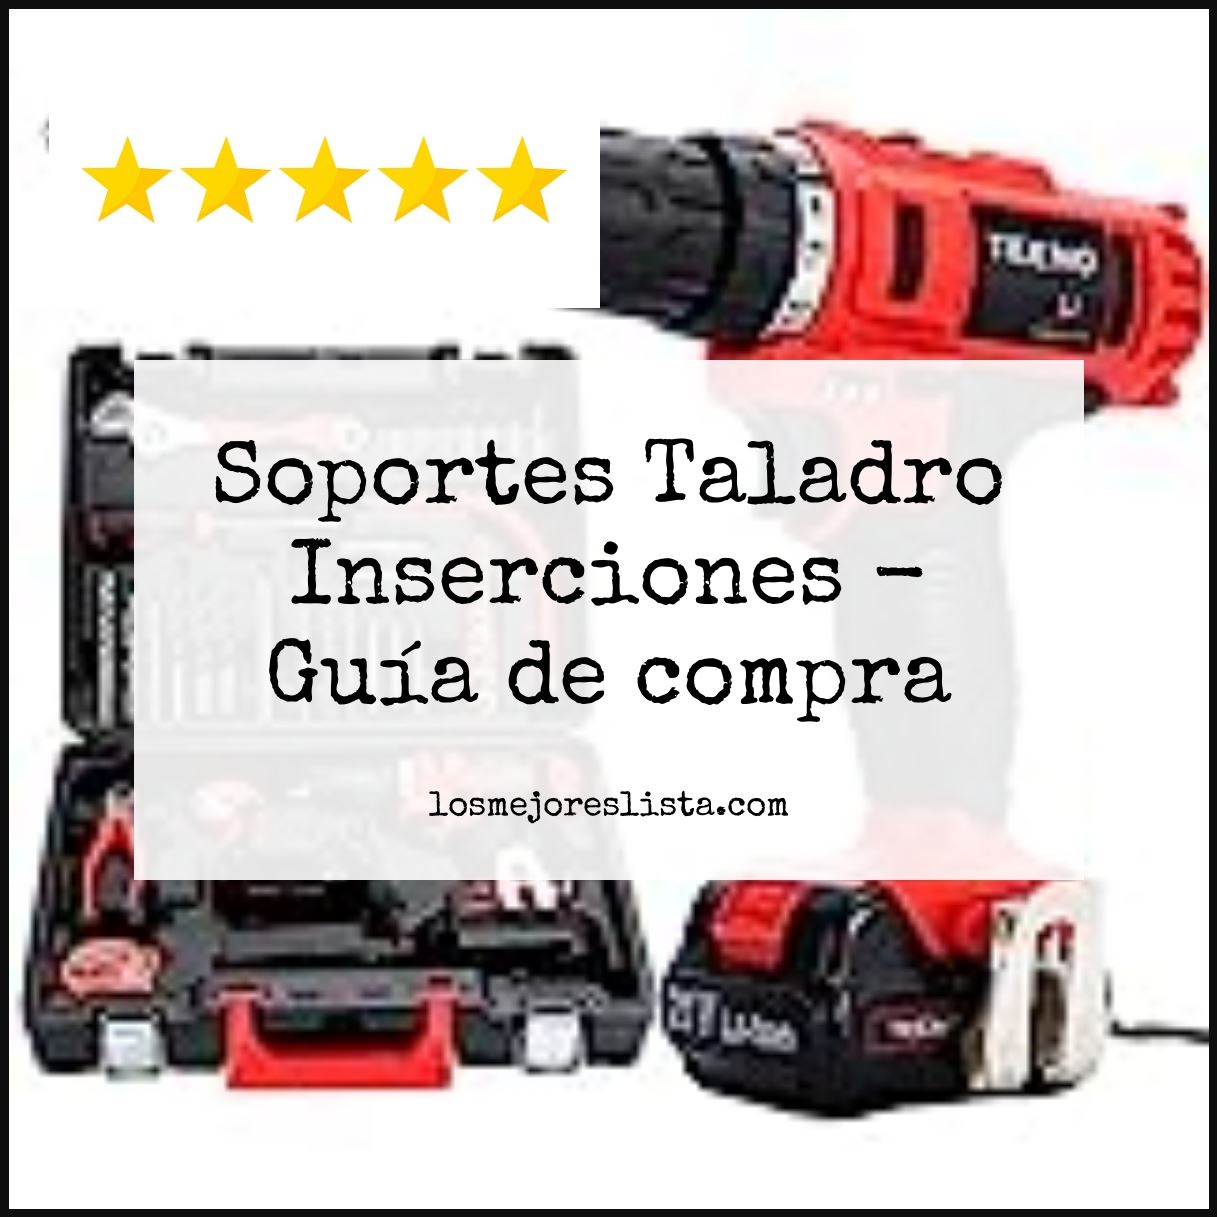 Soportes Taladro Inserciones - Buying Guide